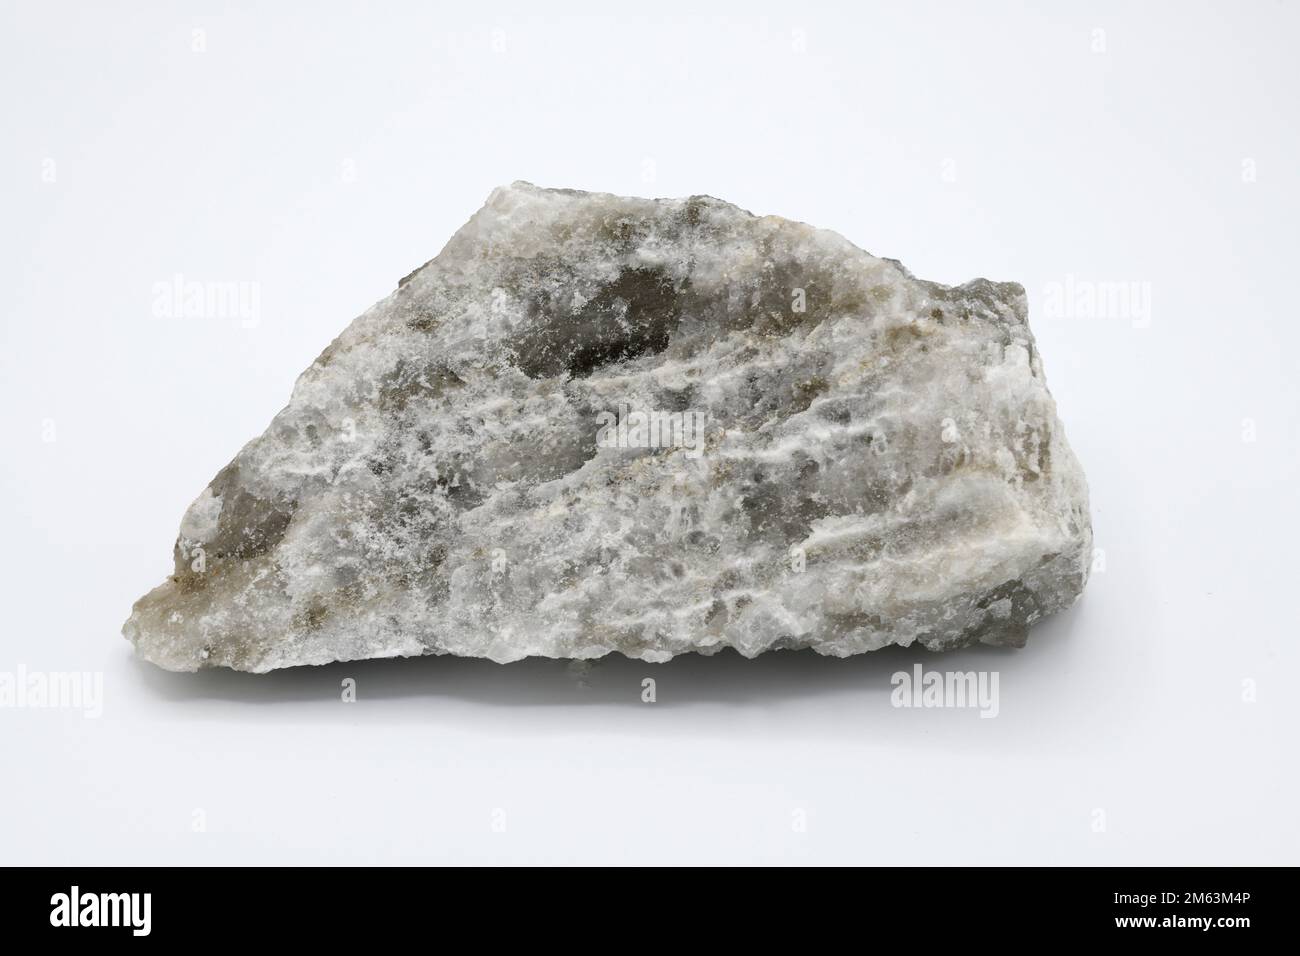 Halogenit oder Steinsalz ist ein Natriumchlorid-Mineral. Diese Probe stammt aus Cardona, Barcelona, Katalonien, Spanien. Stockfoto